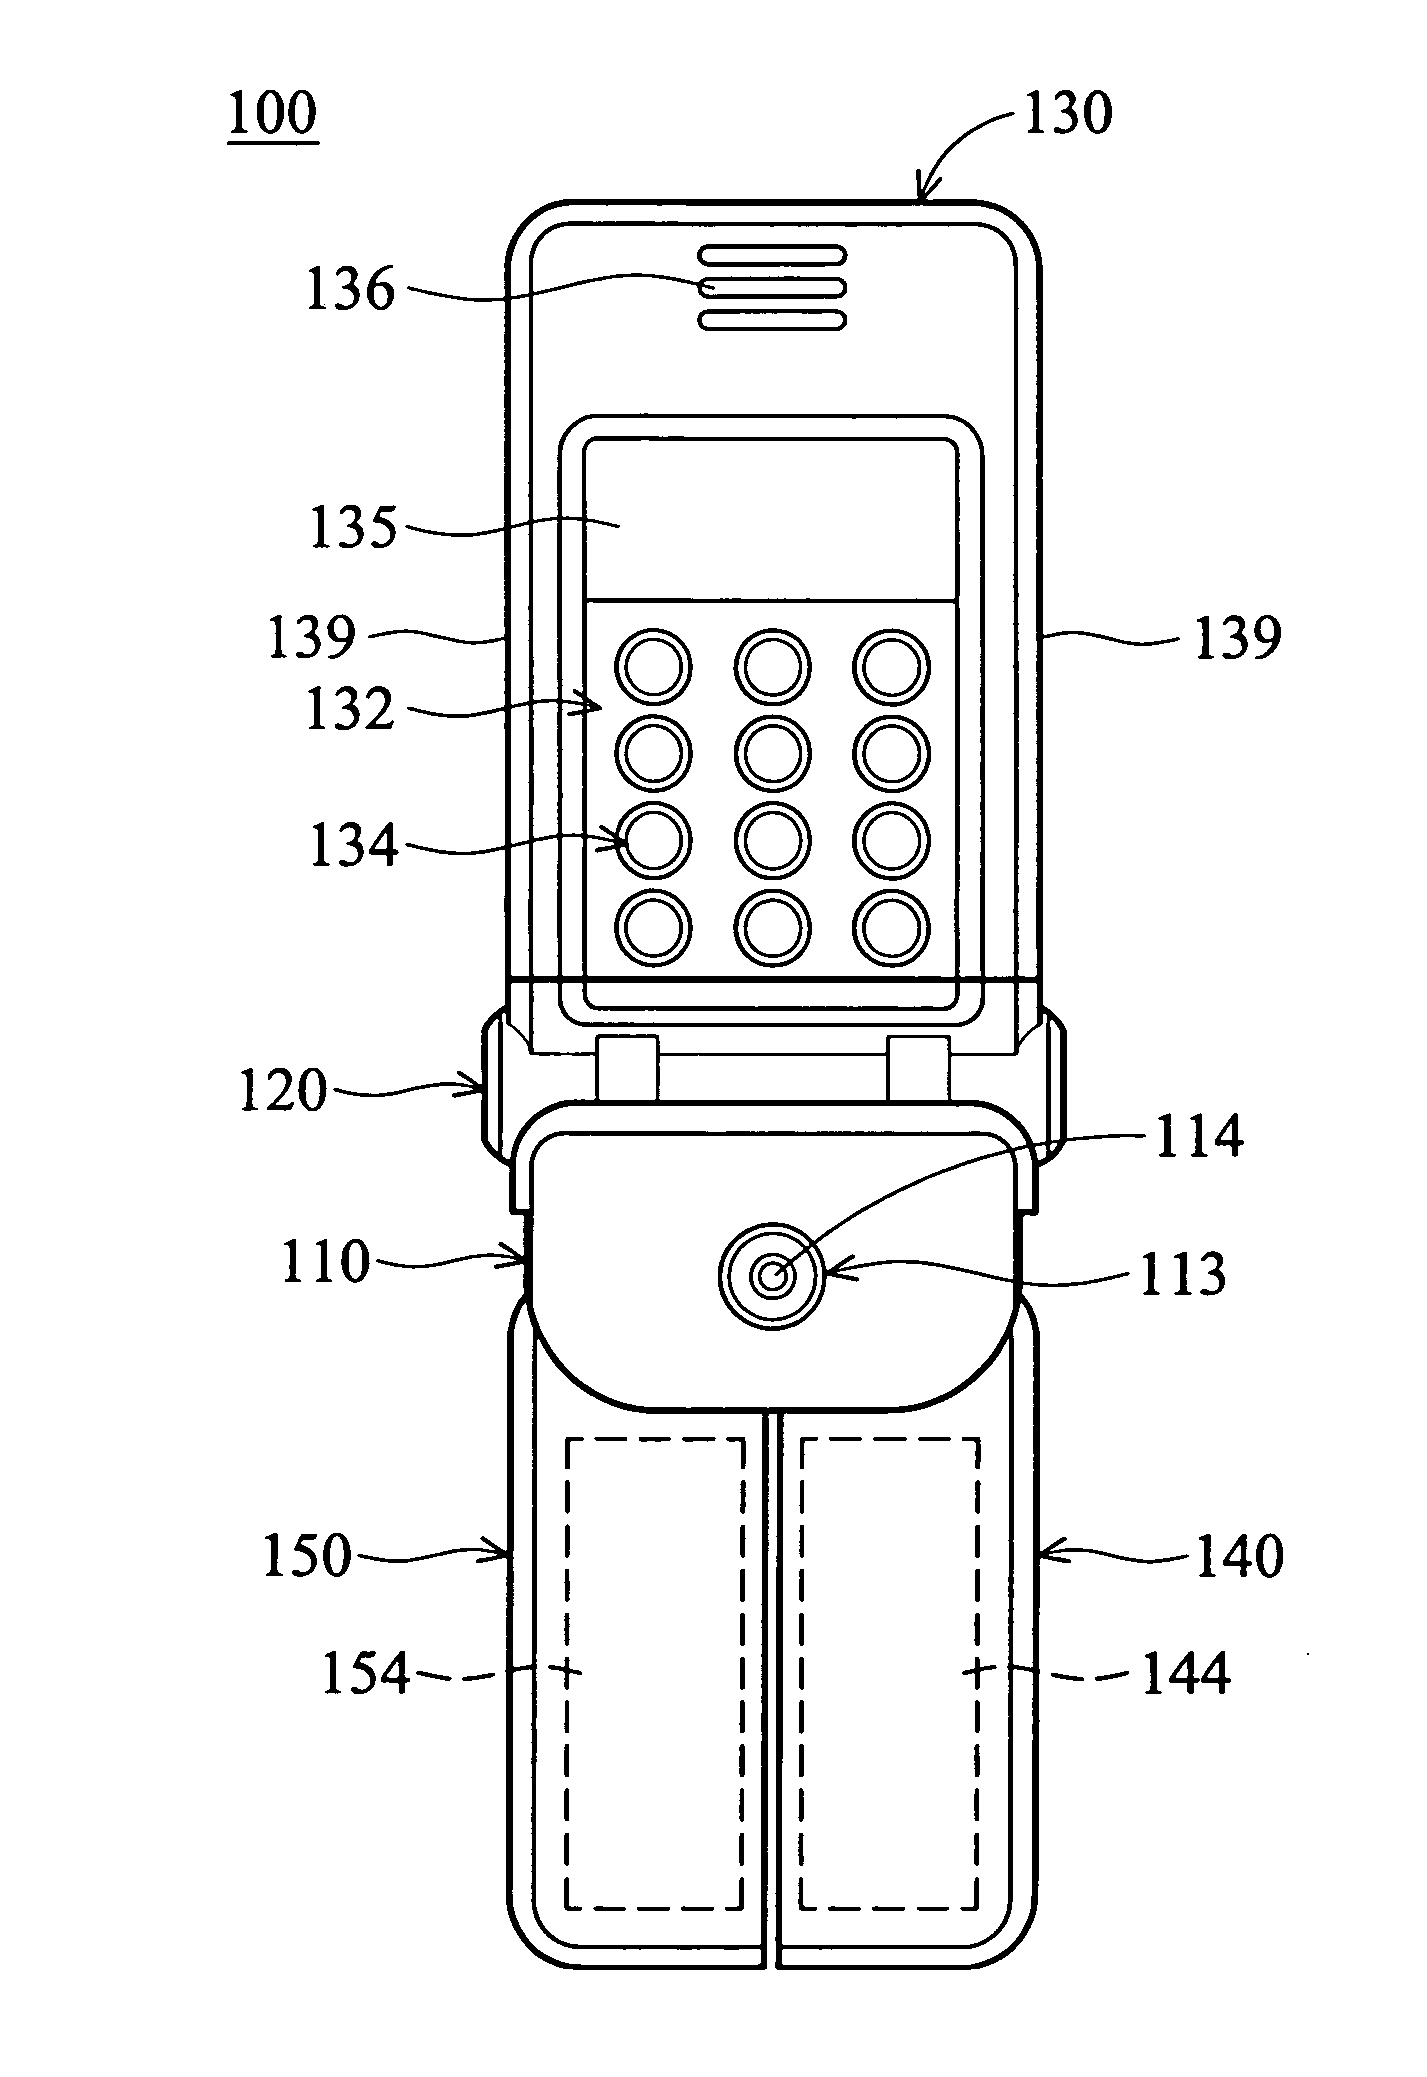 Handheld electronic apparatus